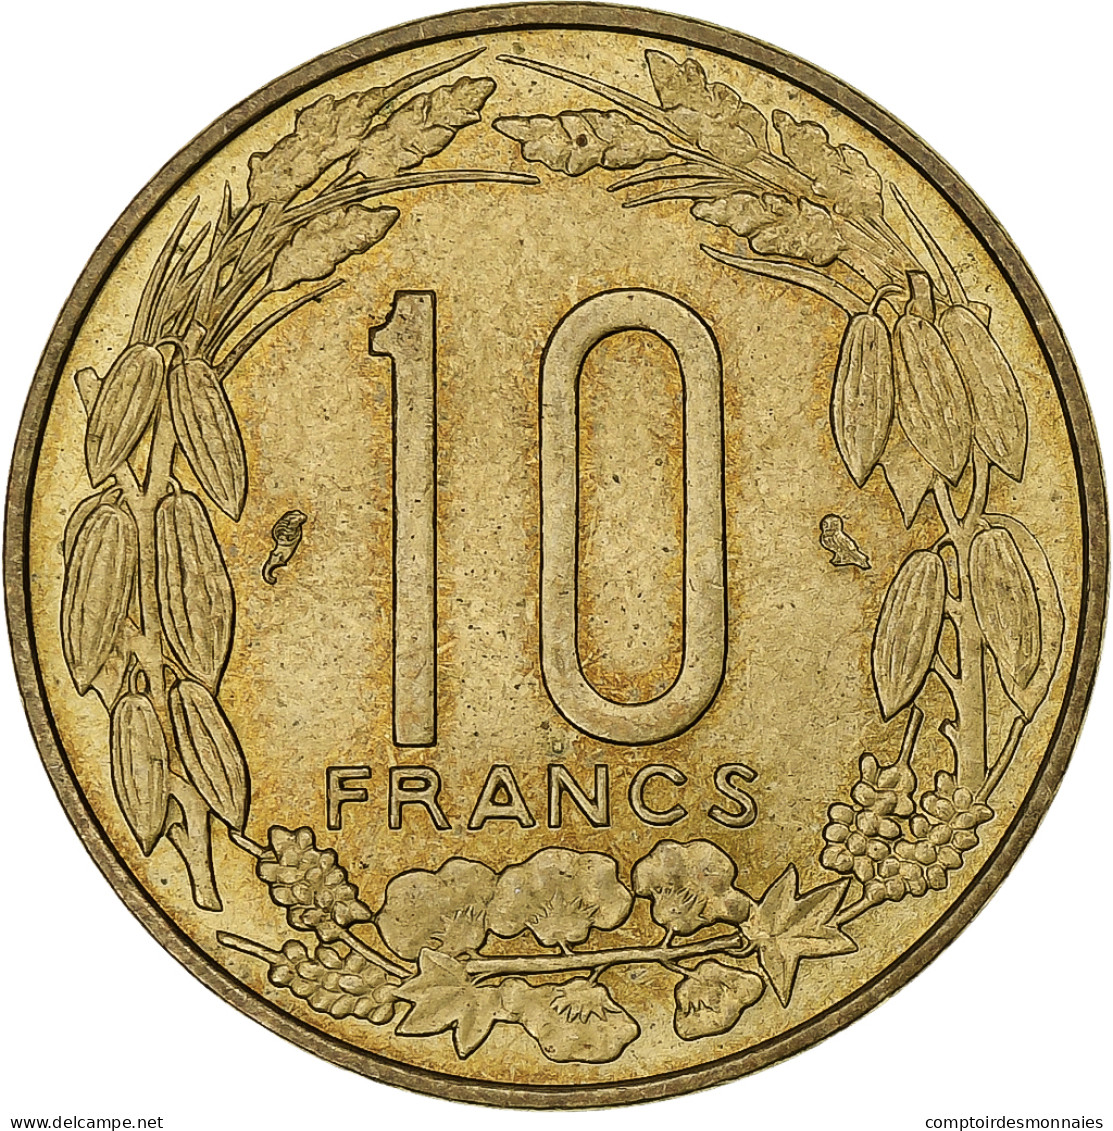 Cameroun, 10 Francs, 1969, Monnaie De Paris, Aluminum-Nickel-Bronze, SUP, KM:11 - Cameroun